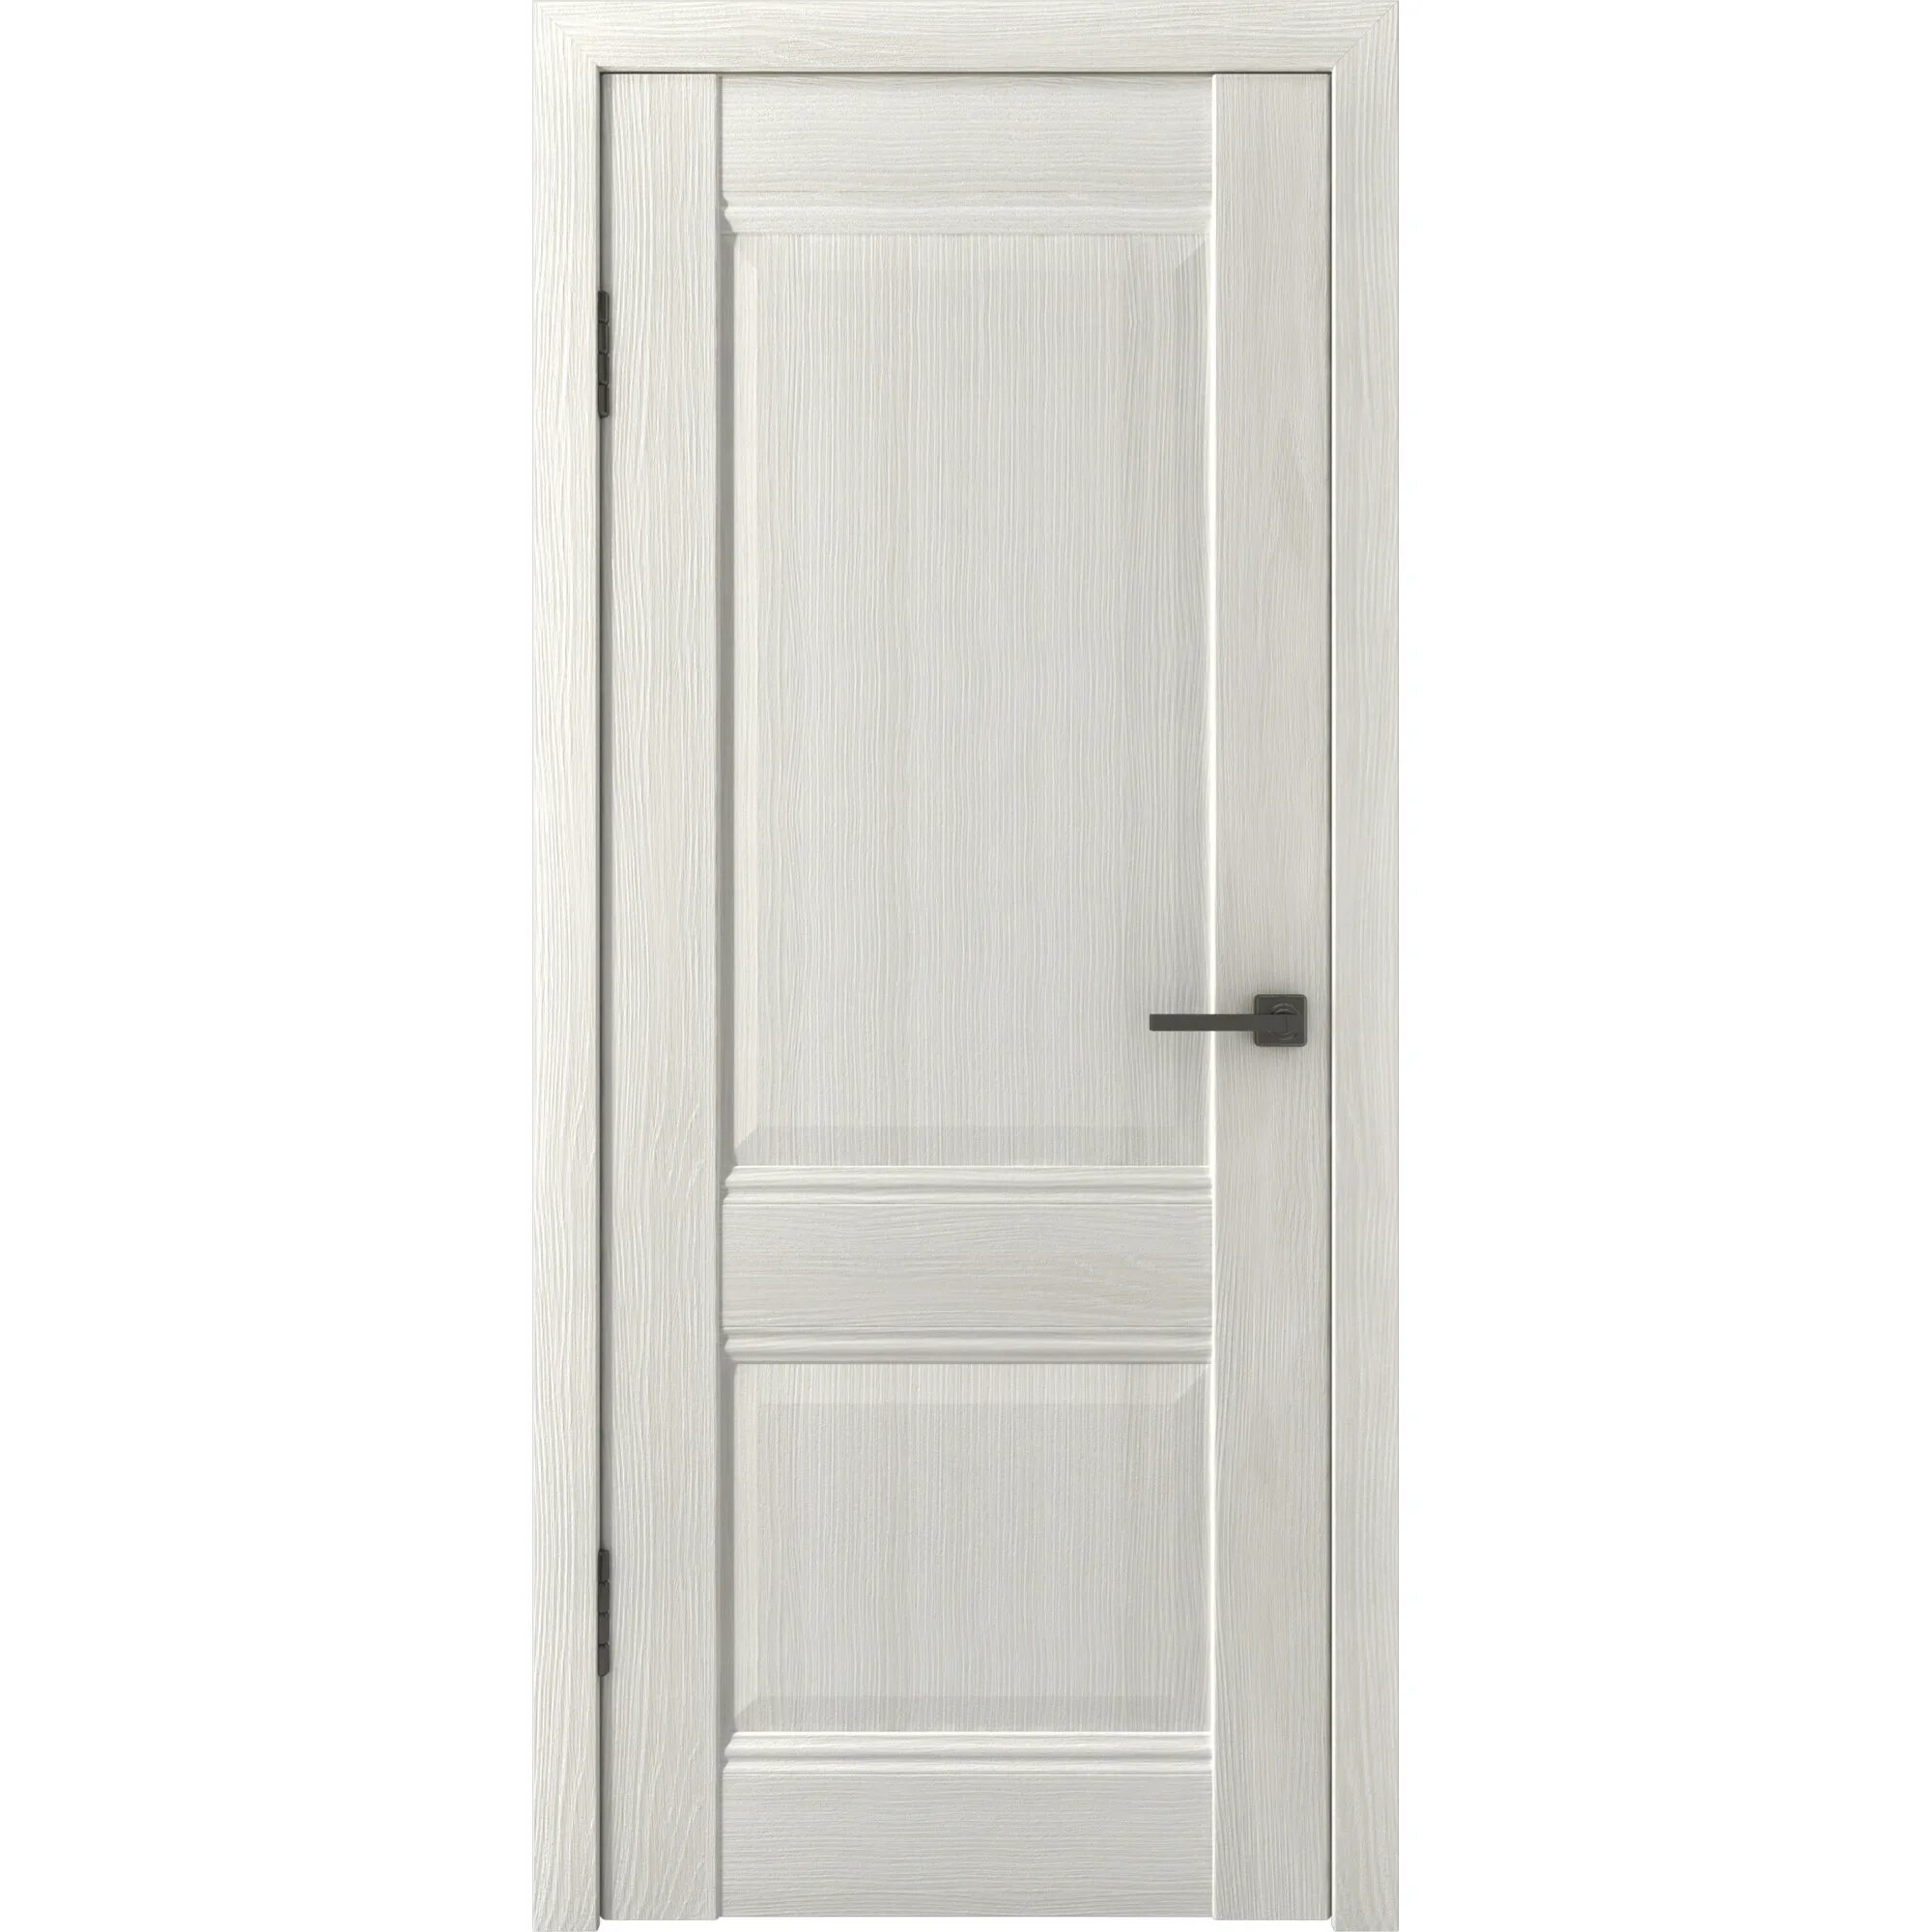 Дверь межкомнатная 80x200 см. Дверь межкомнатная классика глухая. Межкомнатная дверь глухая дуб. Глухая дверь цвет беленый дуб. Дверь ПВХ беленый дуб.